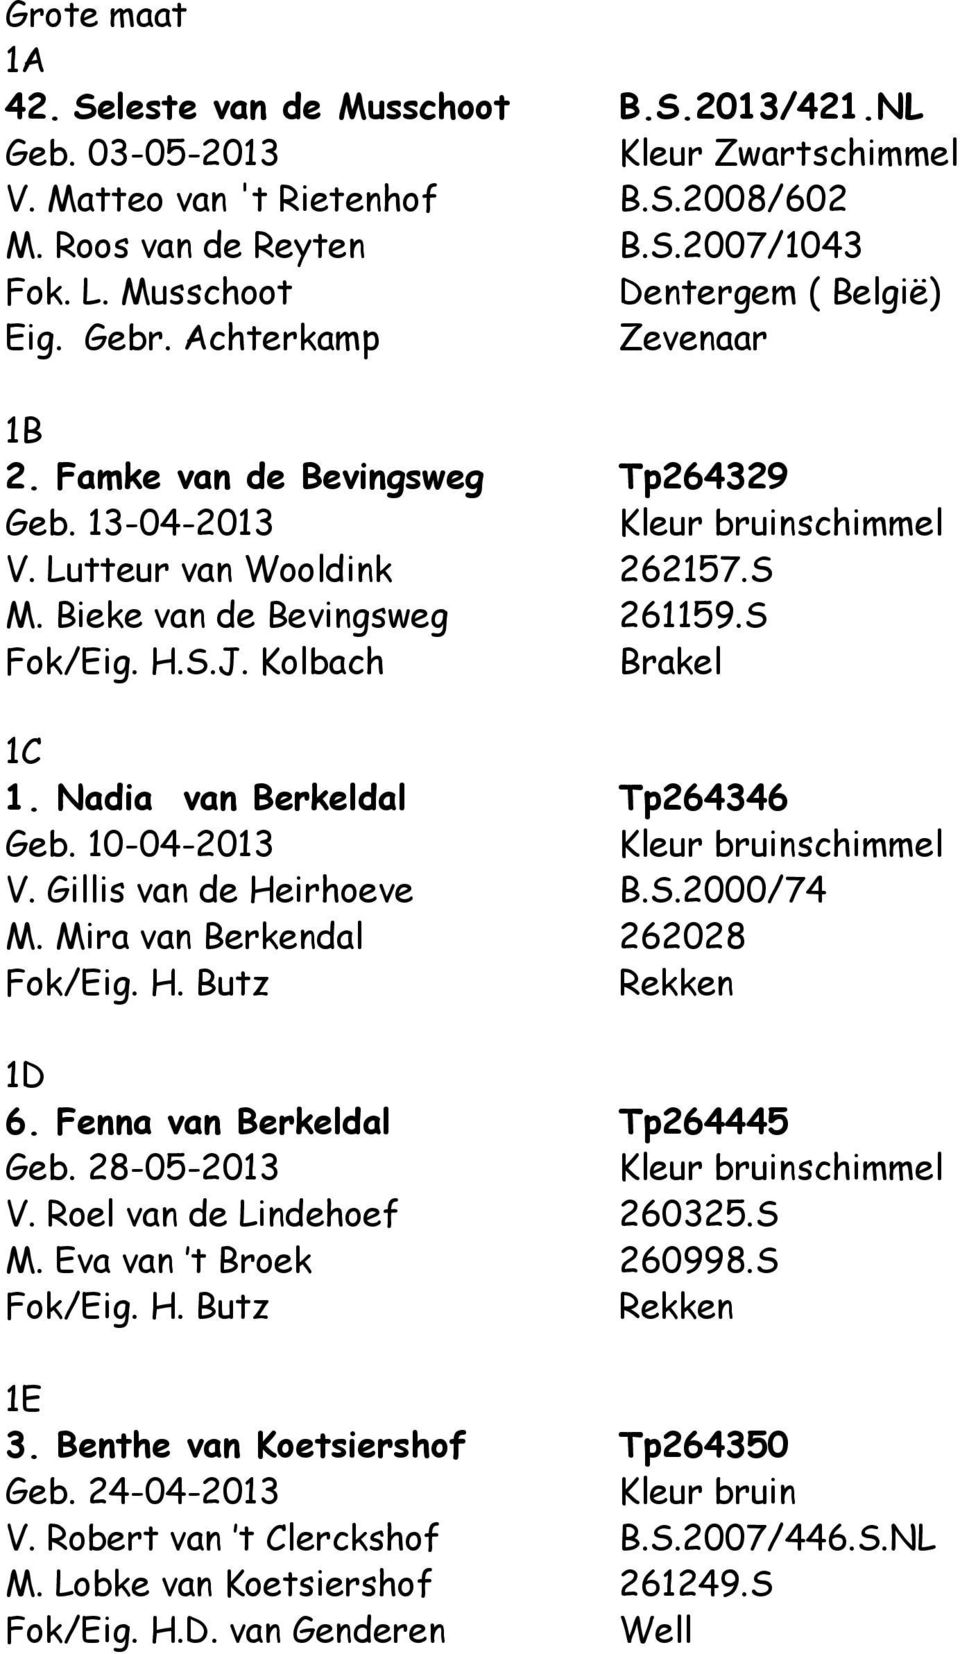 Kolbach Brakel 1C 1. Nadia van Berkeldal Tp264346 Geb. 10-04-2013 V. Gillis van de Heirhoeve B.S.2000/74 M. Mira van Berkendal 262028 Fok/Eig. H. Butz Rekken 1D 6. Fenna van Berkeldal Tp264445 Geb.